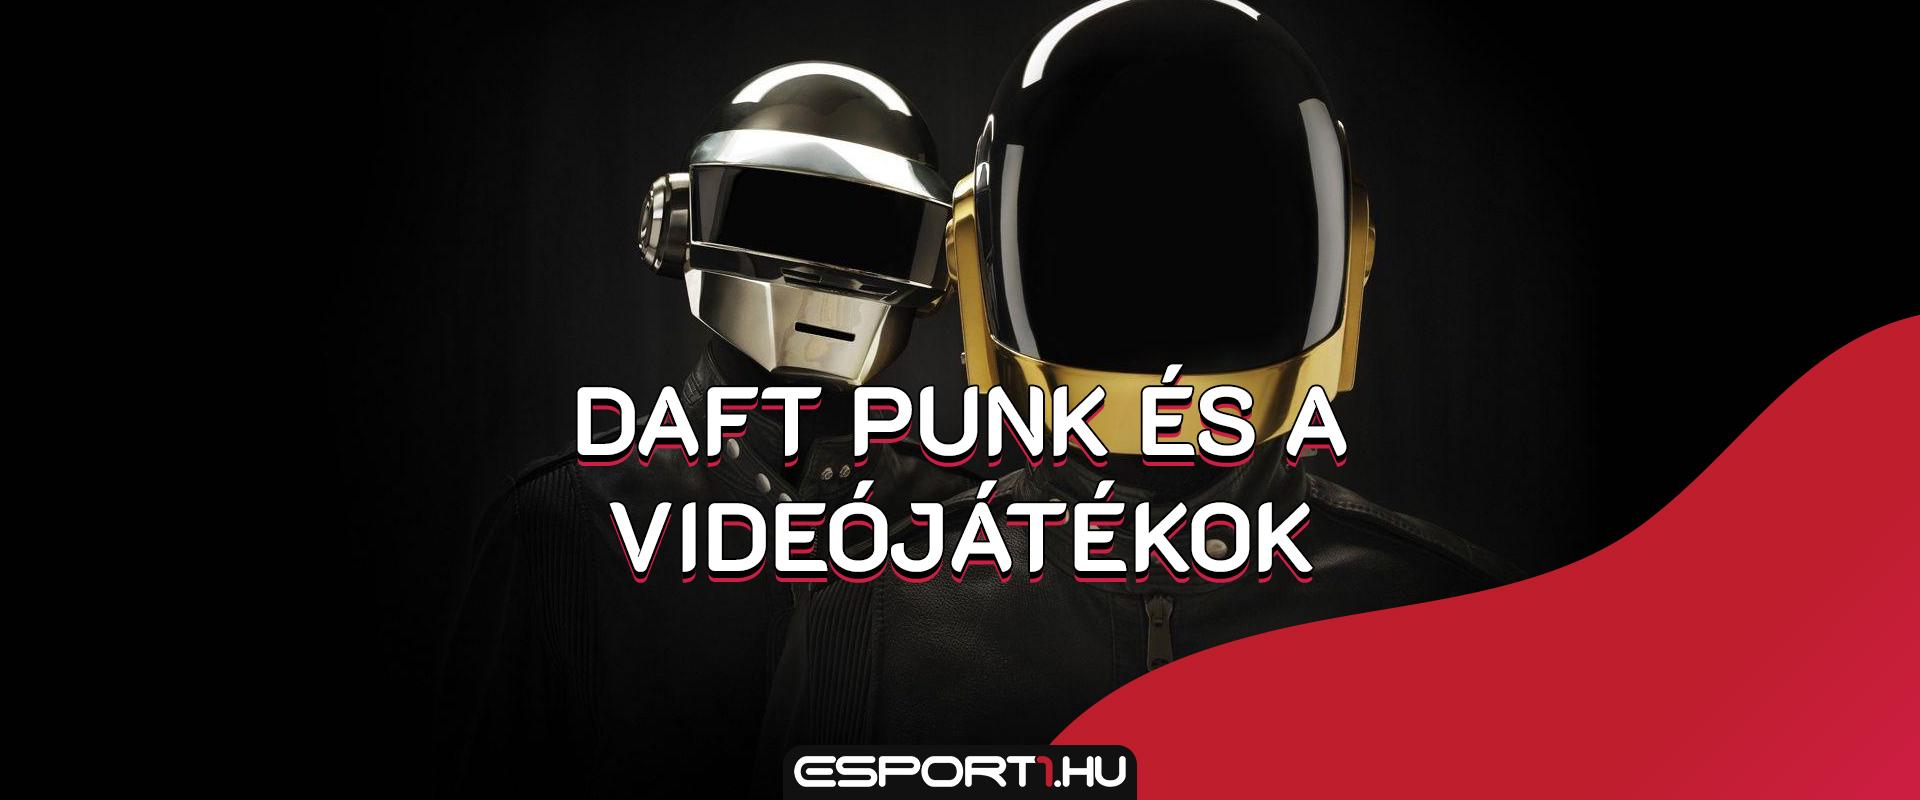 Feloszlott a Daft Punk, ezekben a videójátékokban találkozhattok a dalaikkal